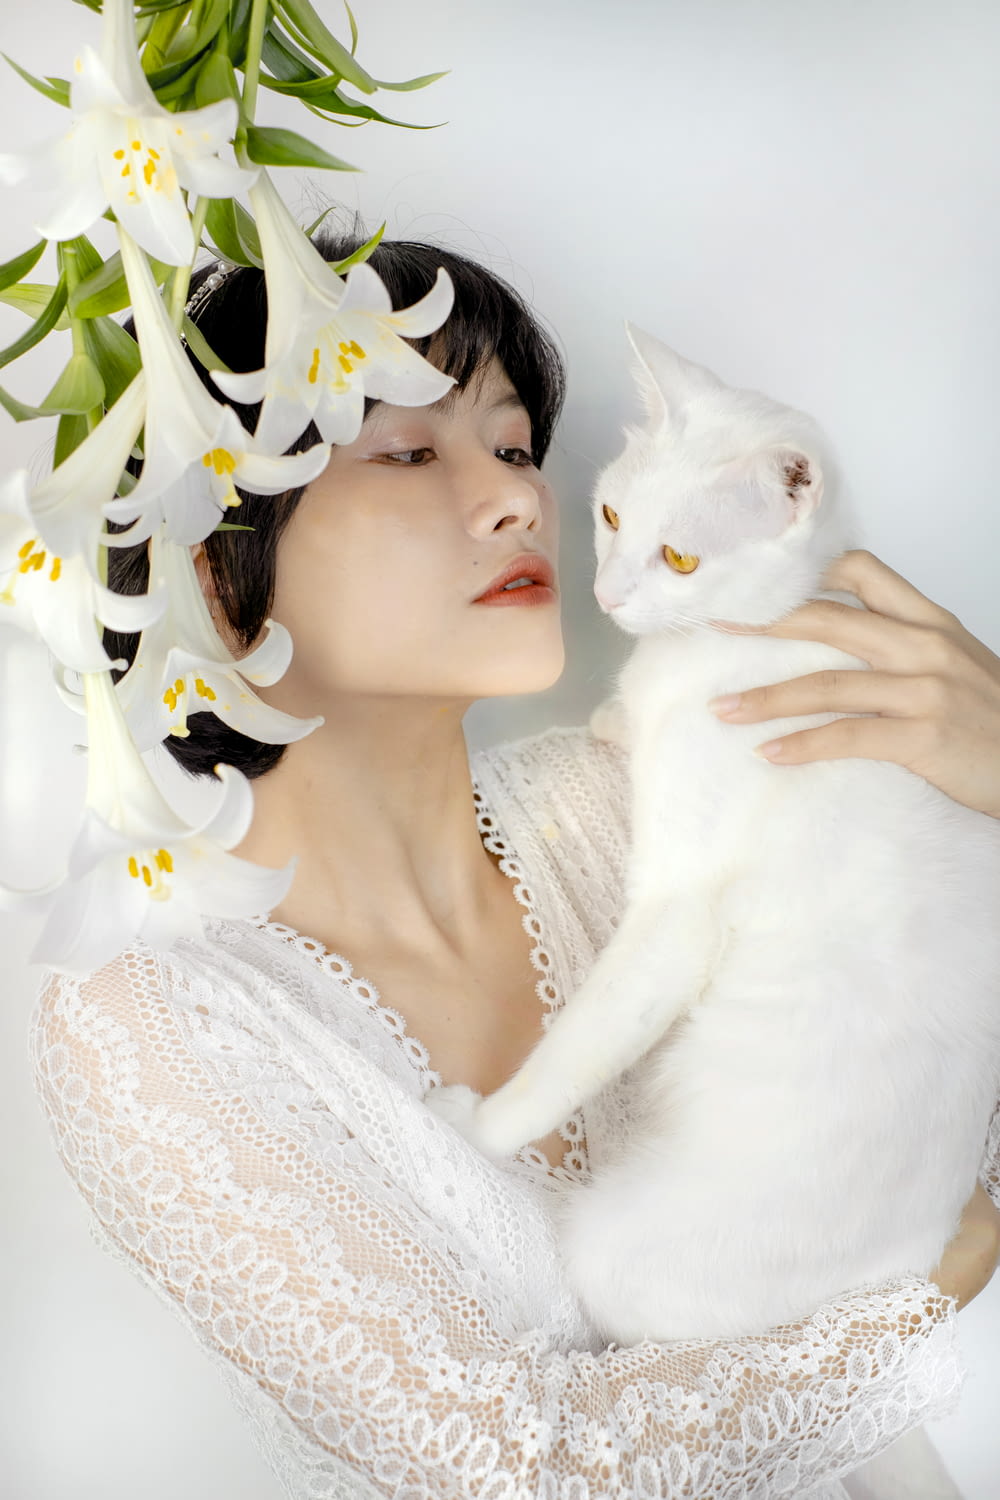 흰 고양이를 안고 있는 하얀 드레스를 입은 여자